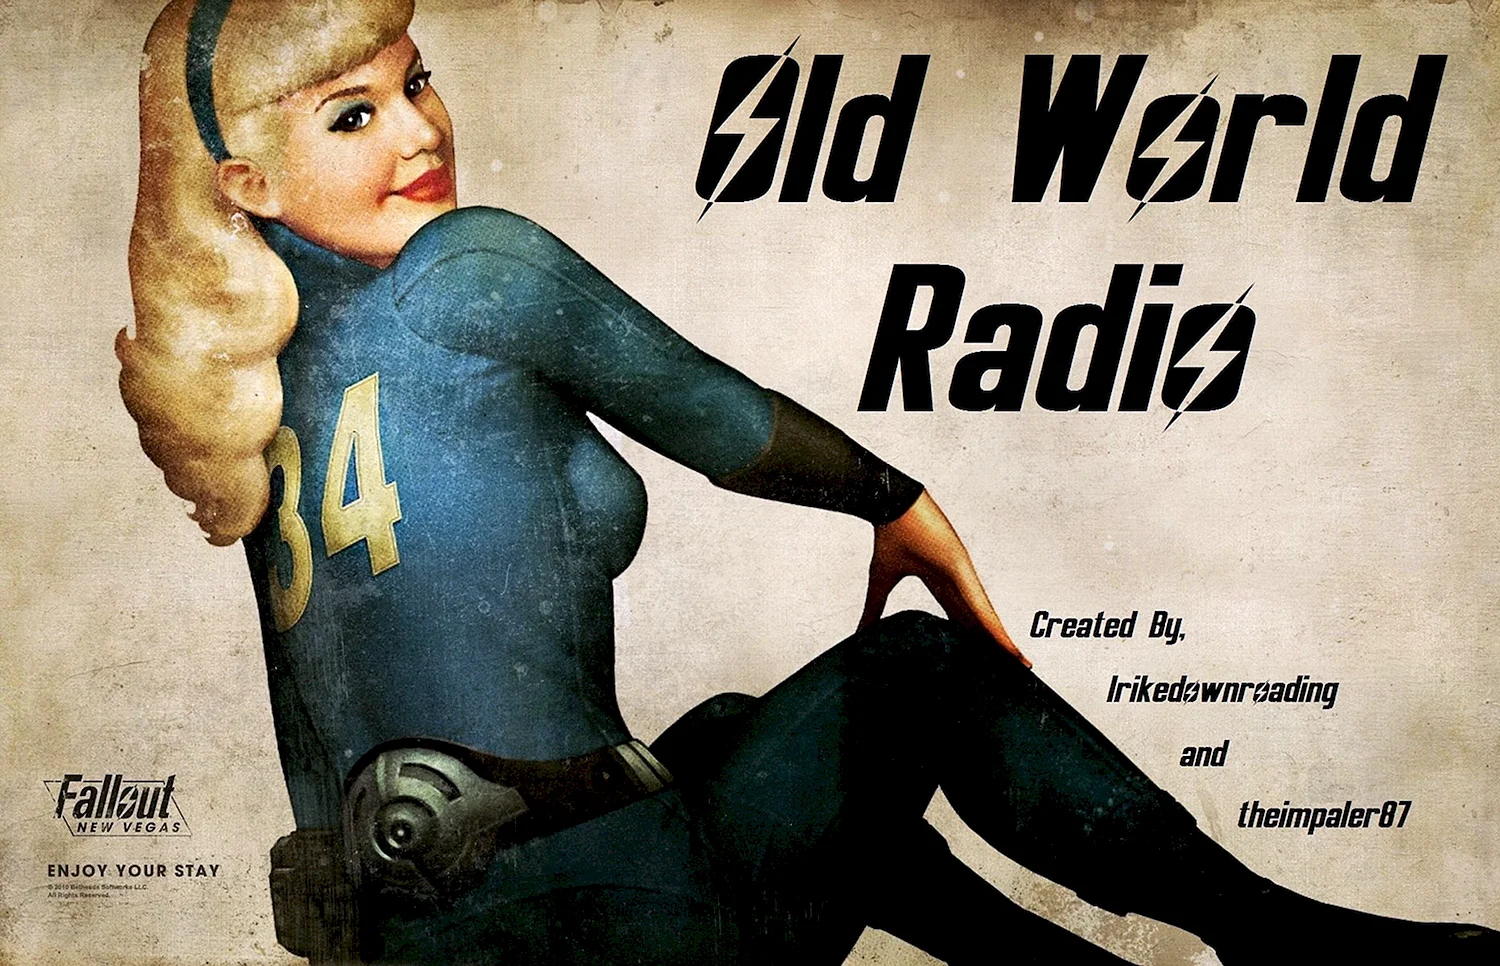 Fallout 3 Постер